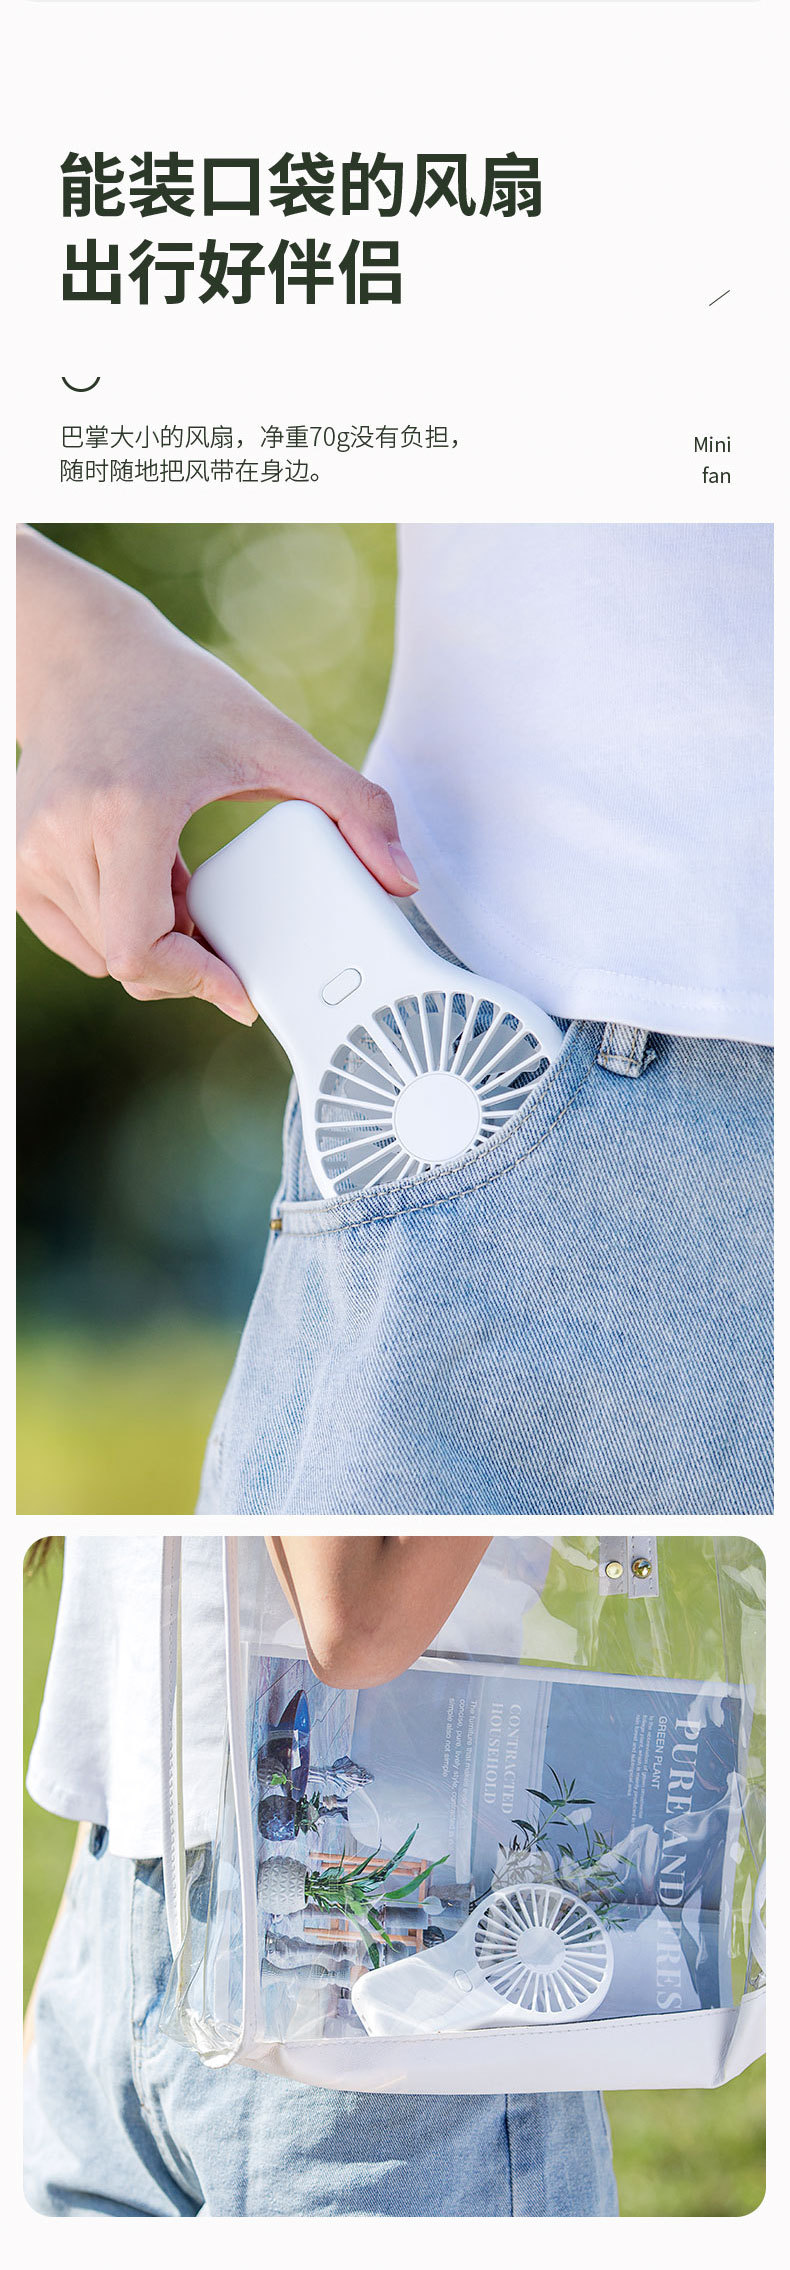 新款夏季可攜式戶外迷你手持迷你風扇學生兒童女生口袋充電風扇